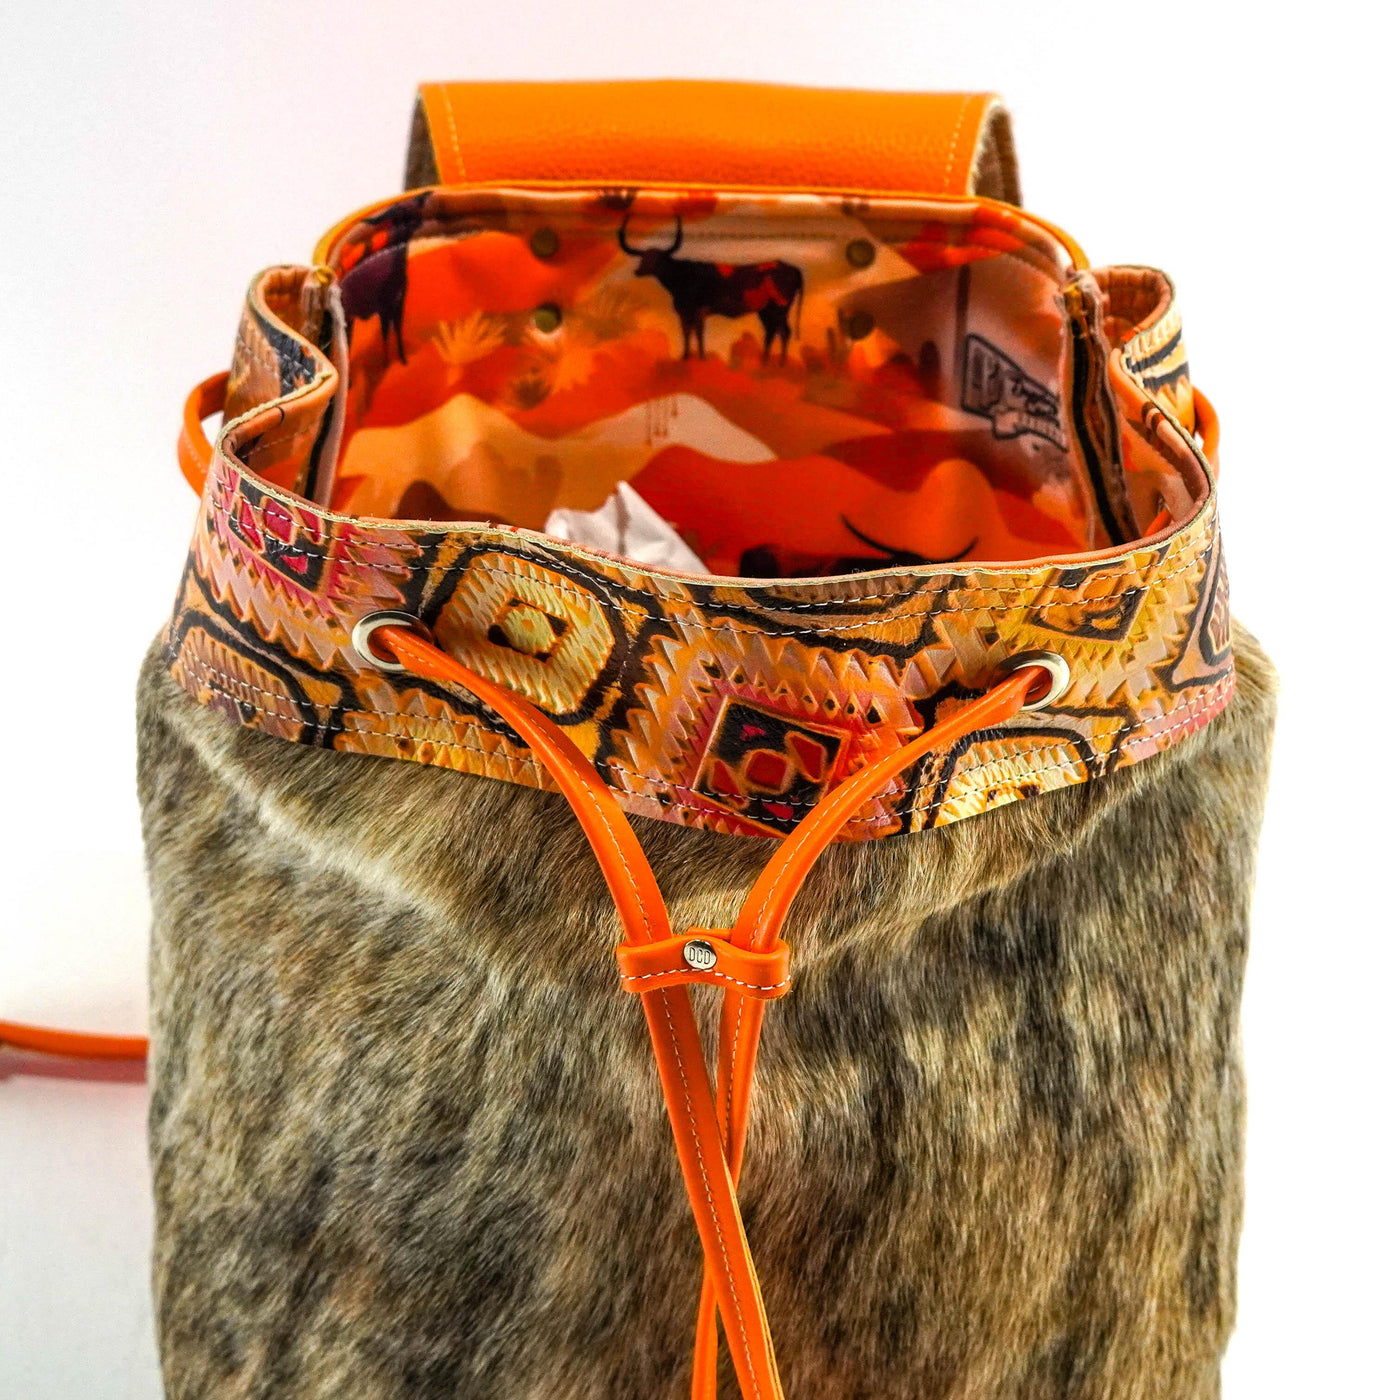 Kelsea Backpack - Exotic Brindle w/ Moab Aztec-Kelsea Backpack-Western-Cowhide-Bags-Handmade-Products-Gifts-Dancing Cactus Designs